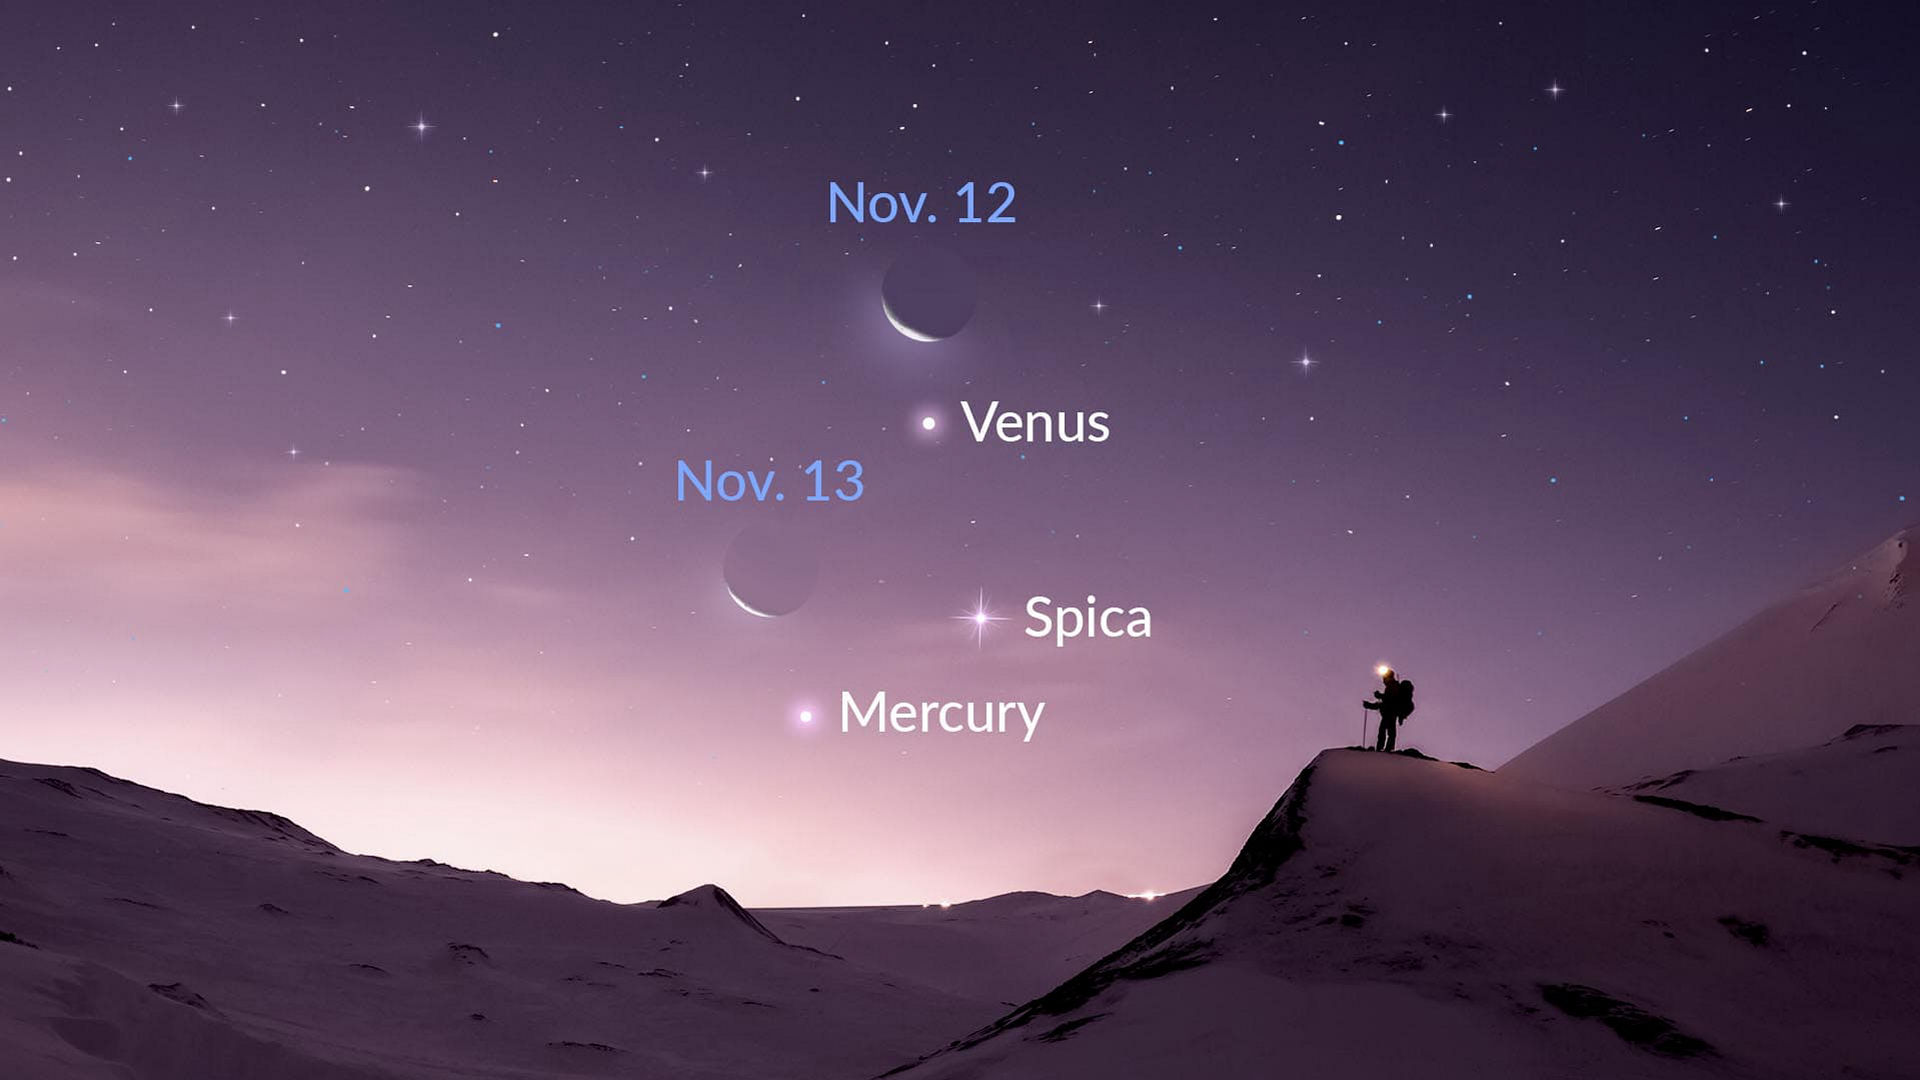 Observa la Luna que brilla cerca de Mercurio, Venus y Spica